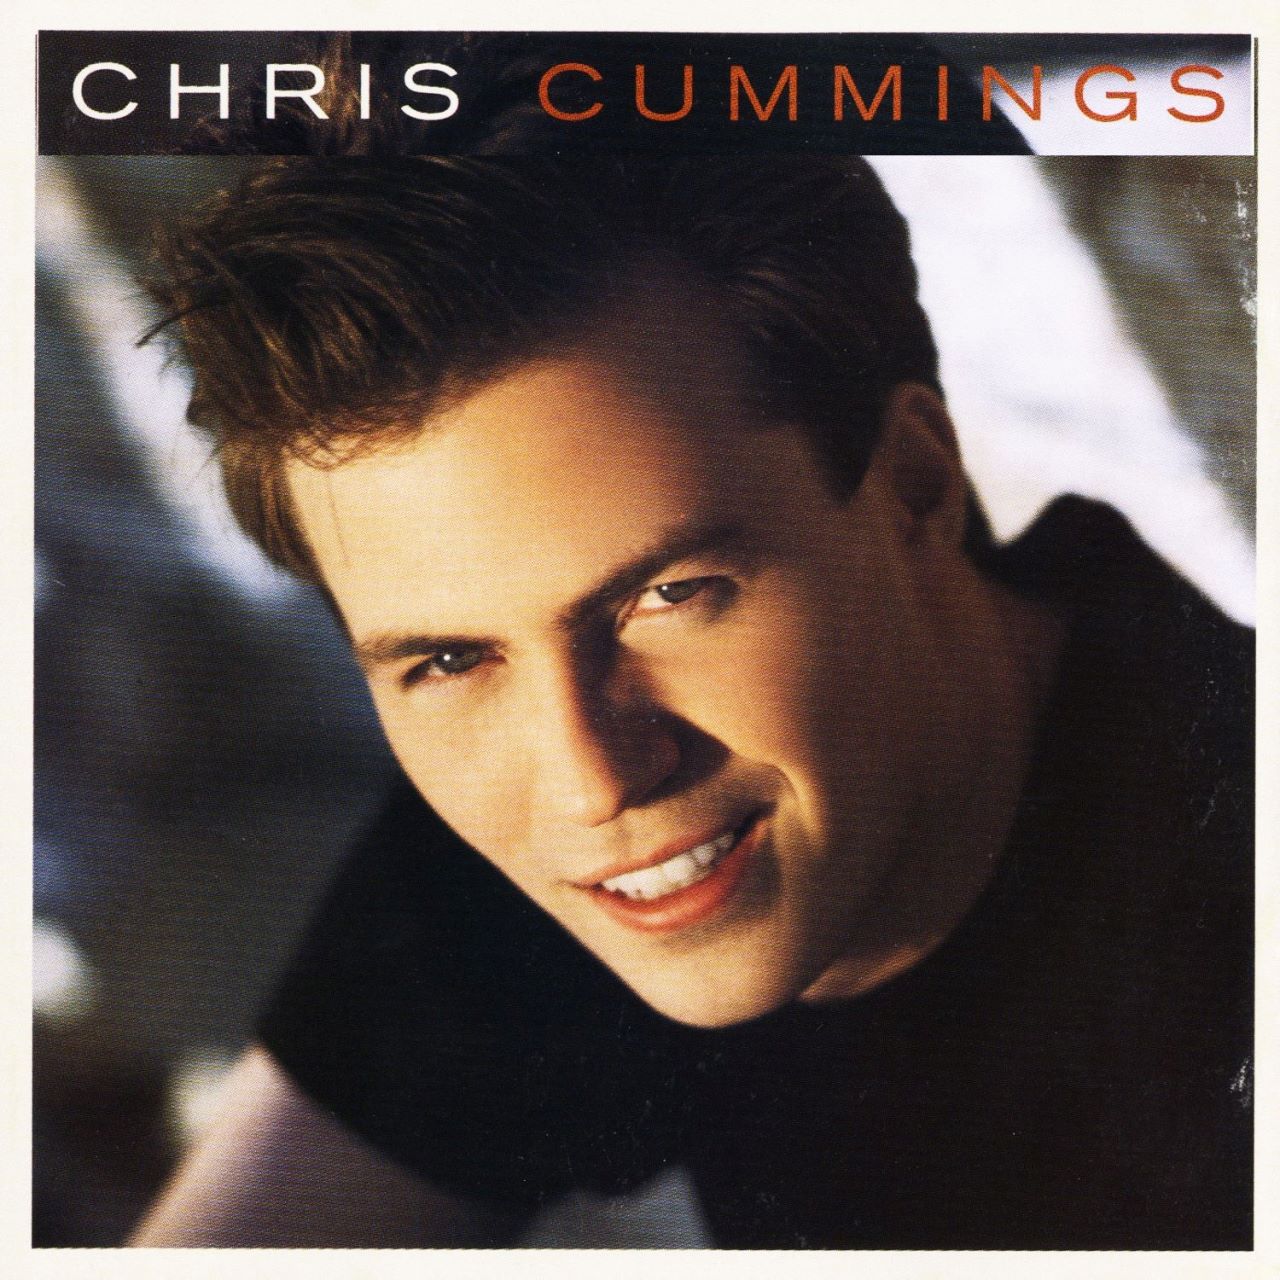 Chris Cummings - Chris Cummings cover album